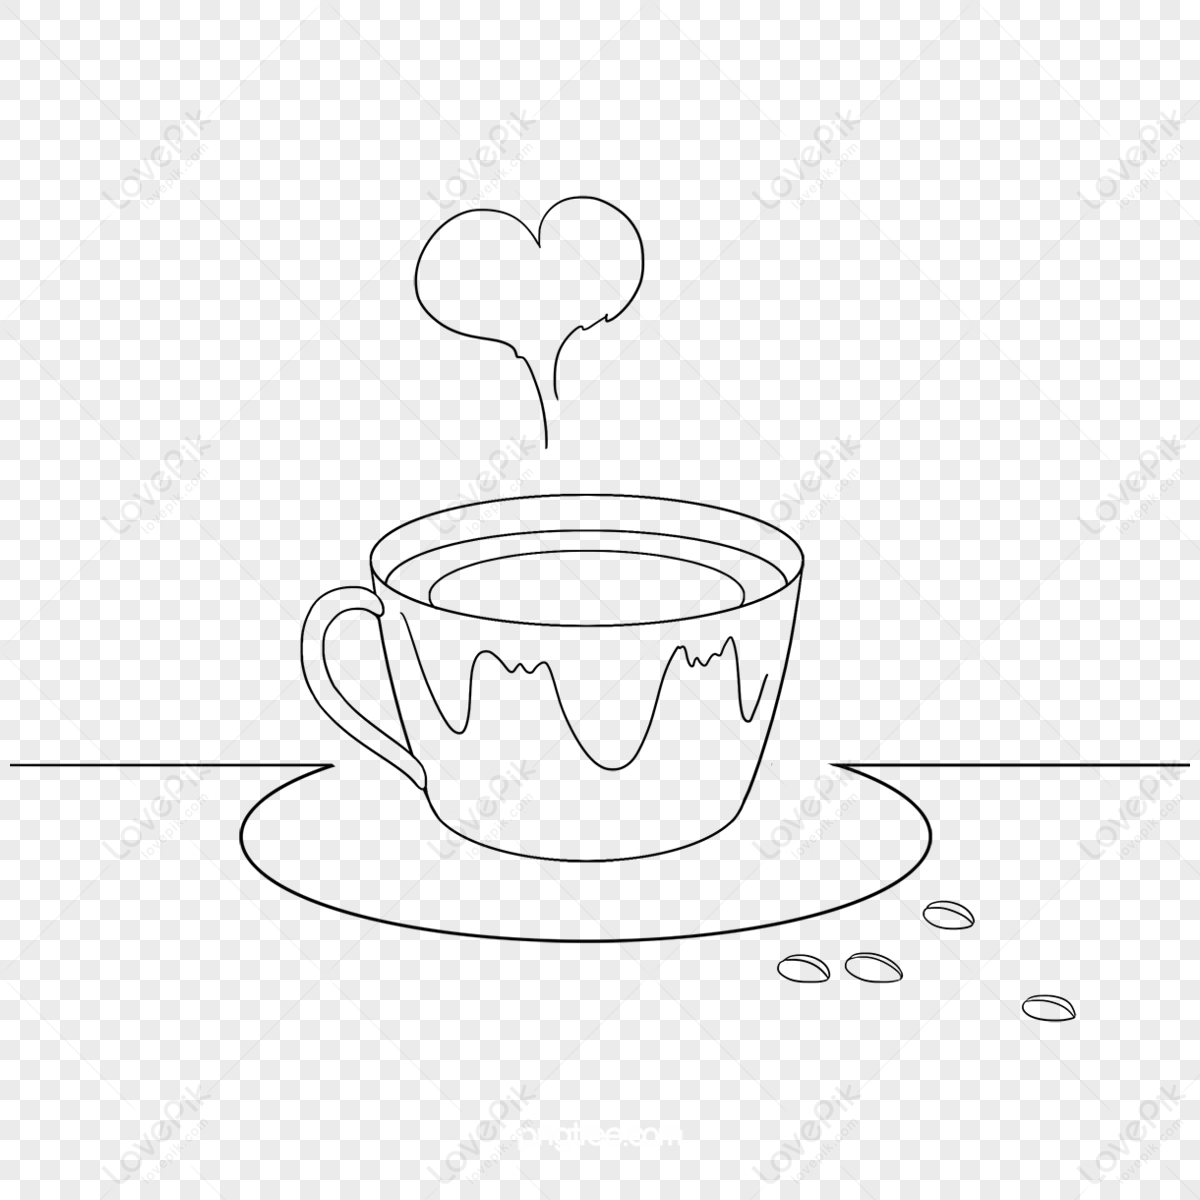 Sketch coffee cup Royalty Free Vector Image - VectorStock